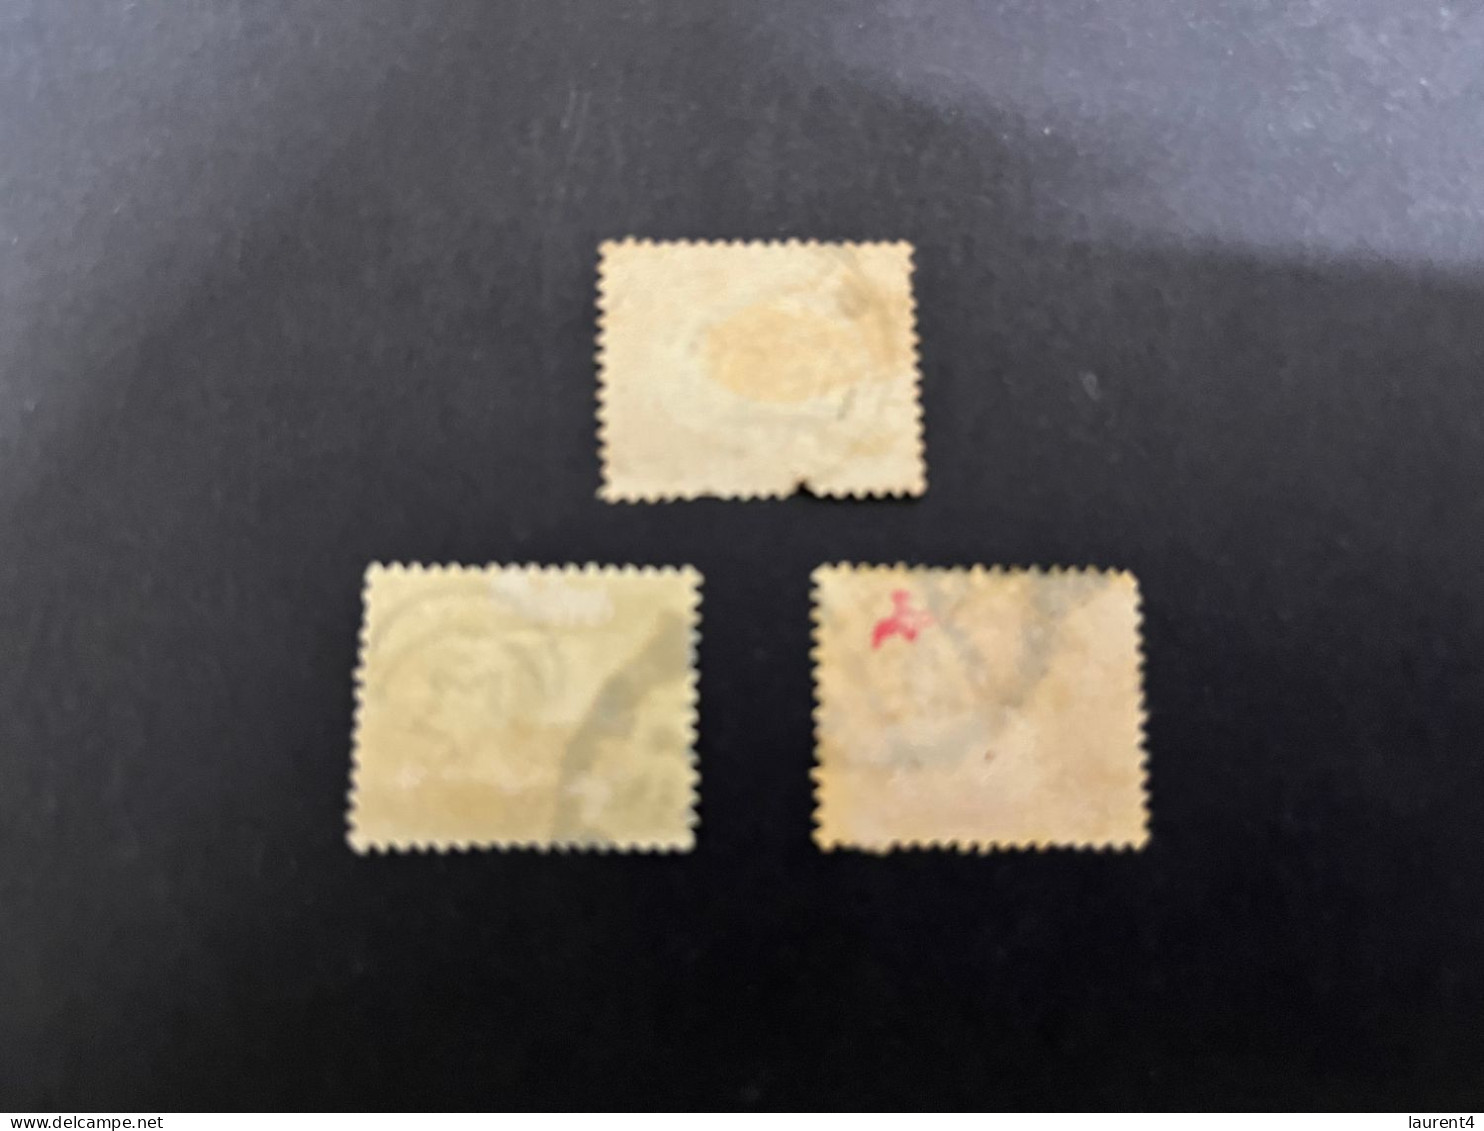 8-1-2024 (stamp) 3 Older Cancelled Stamp From Egypt (service Stamps) - Usados